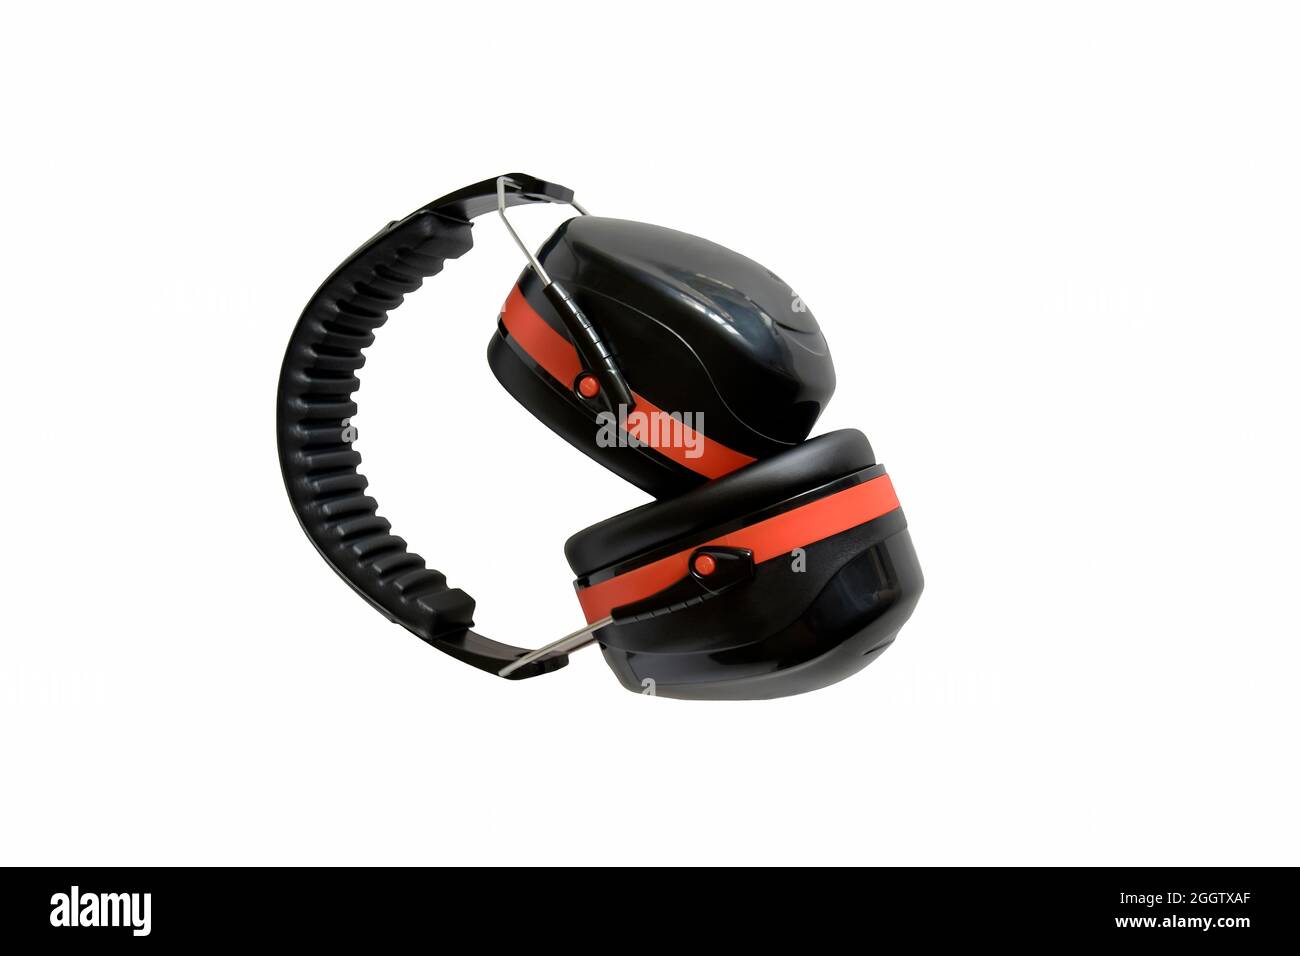 Professionelle Kopfhörer mit Schutzfunktion, isoliert auf weißem Hintergrund. Schutz von Hörorganen. Sicherheitsvorrichtung. Professionelle rote und schwarze Konstruktion Stockfoto